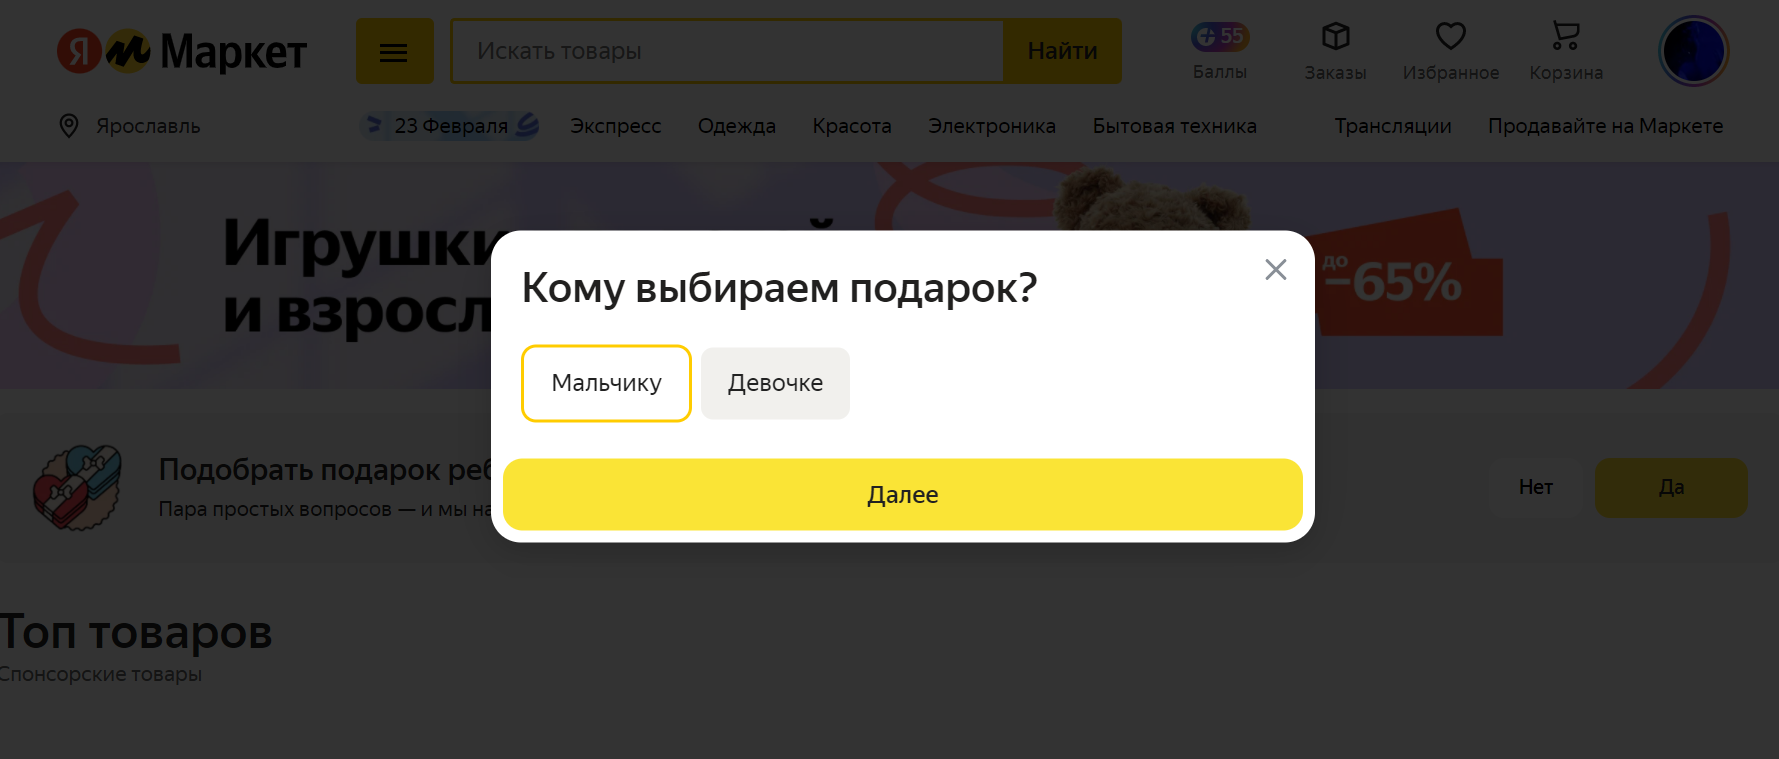 Подбор товаров на Яндекс.Маркете